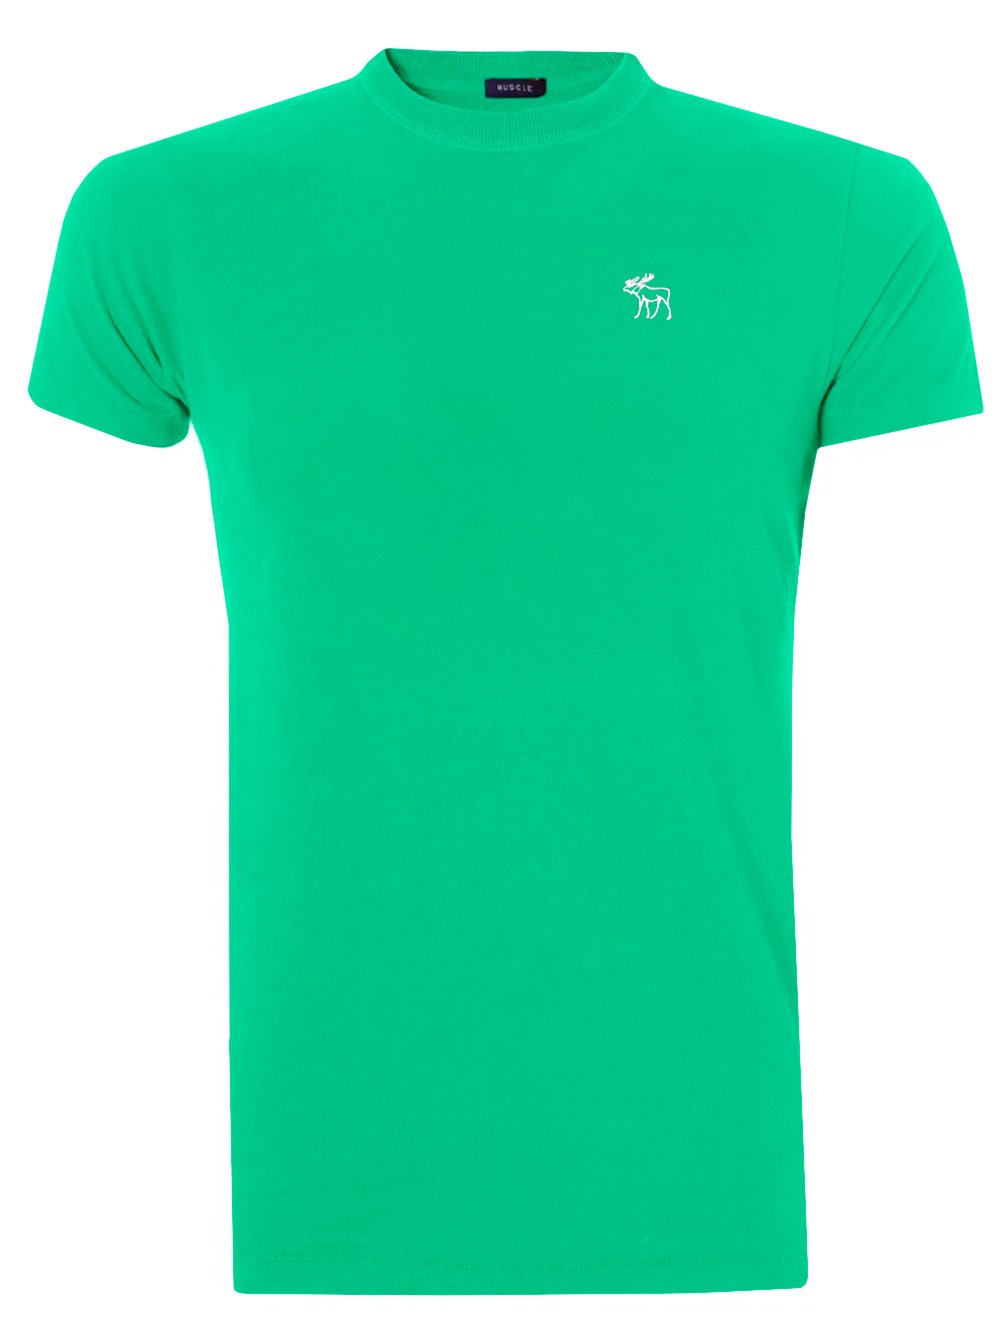 Camiseta Abercrombie Masculina Outline White Icon Verde